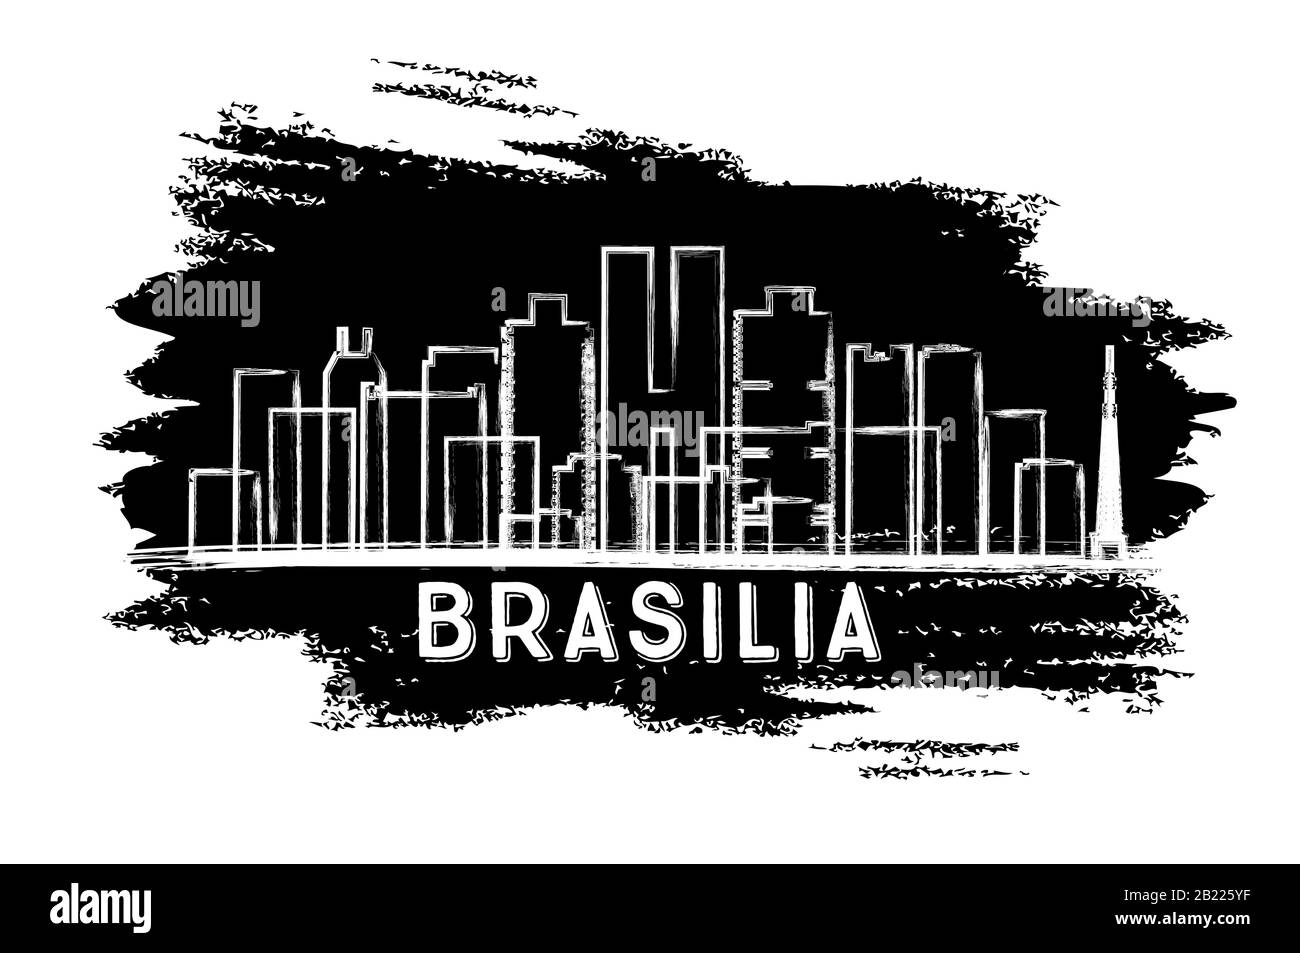 Brasília Brasilien City Skyline Silhouette. Handgezeichnete Skizze. Vektorgrafiken. Business Travel and Tourism Konzept mit Moderner Architektur. Stock Vektor